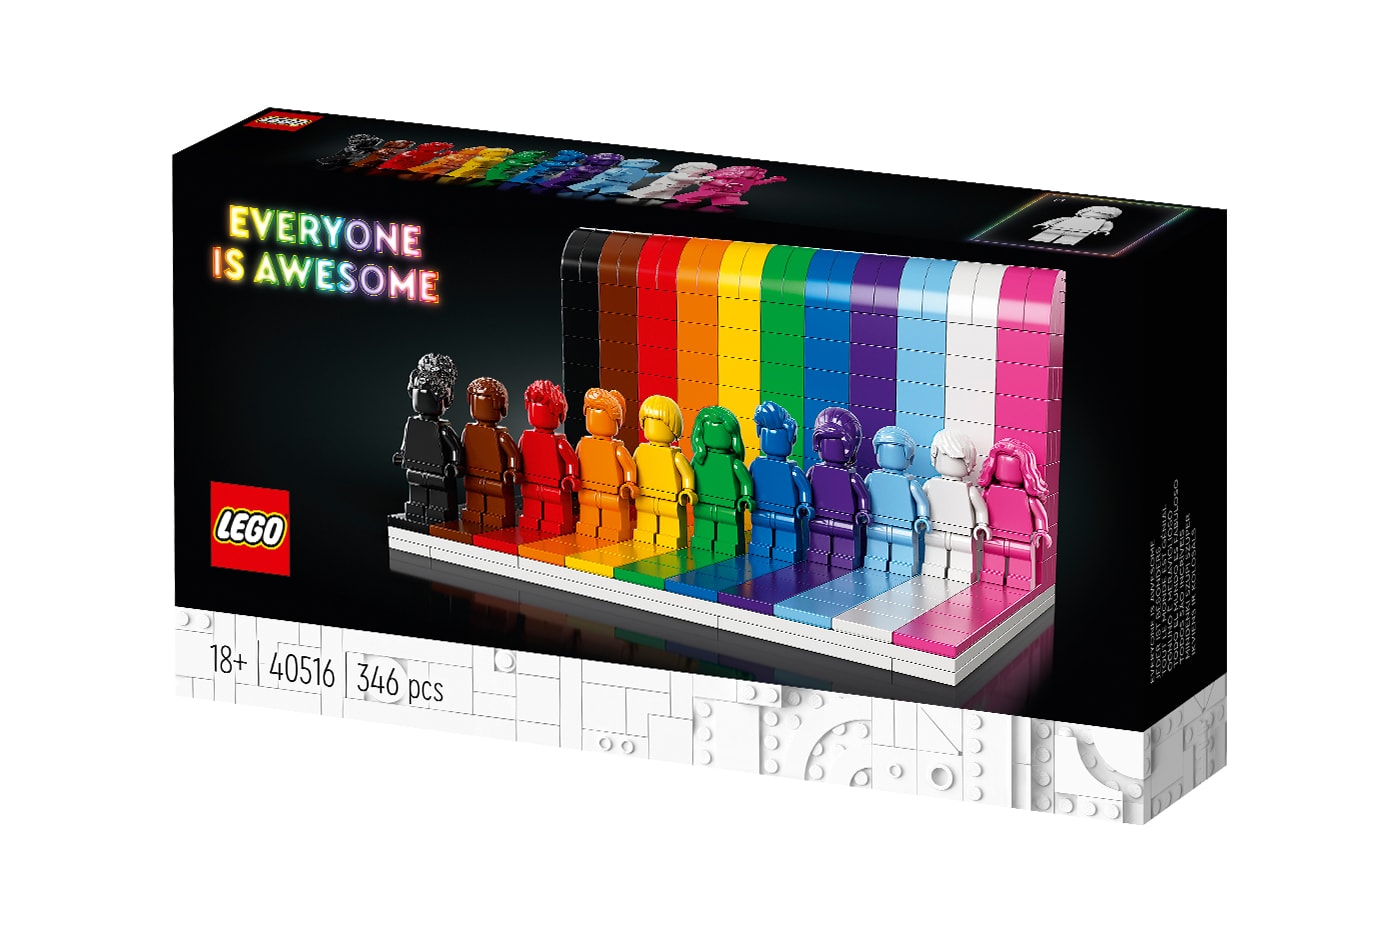 Lego Rainbow Heart - Gay Pride LGBT Christmas T - Folksy